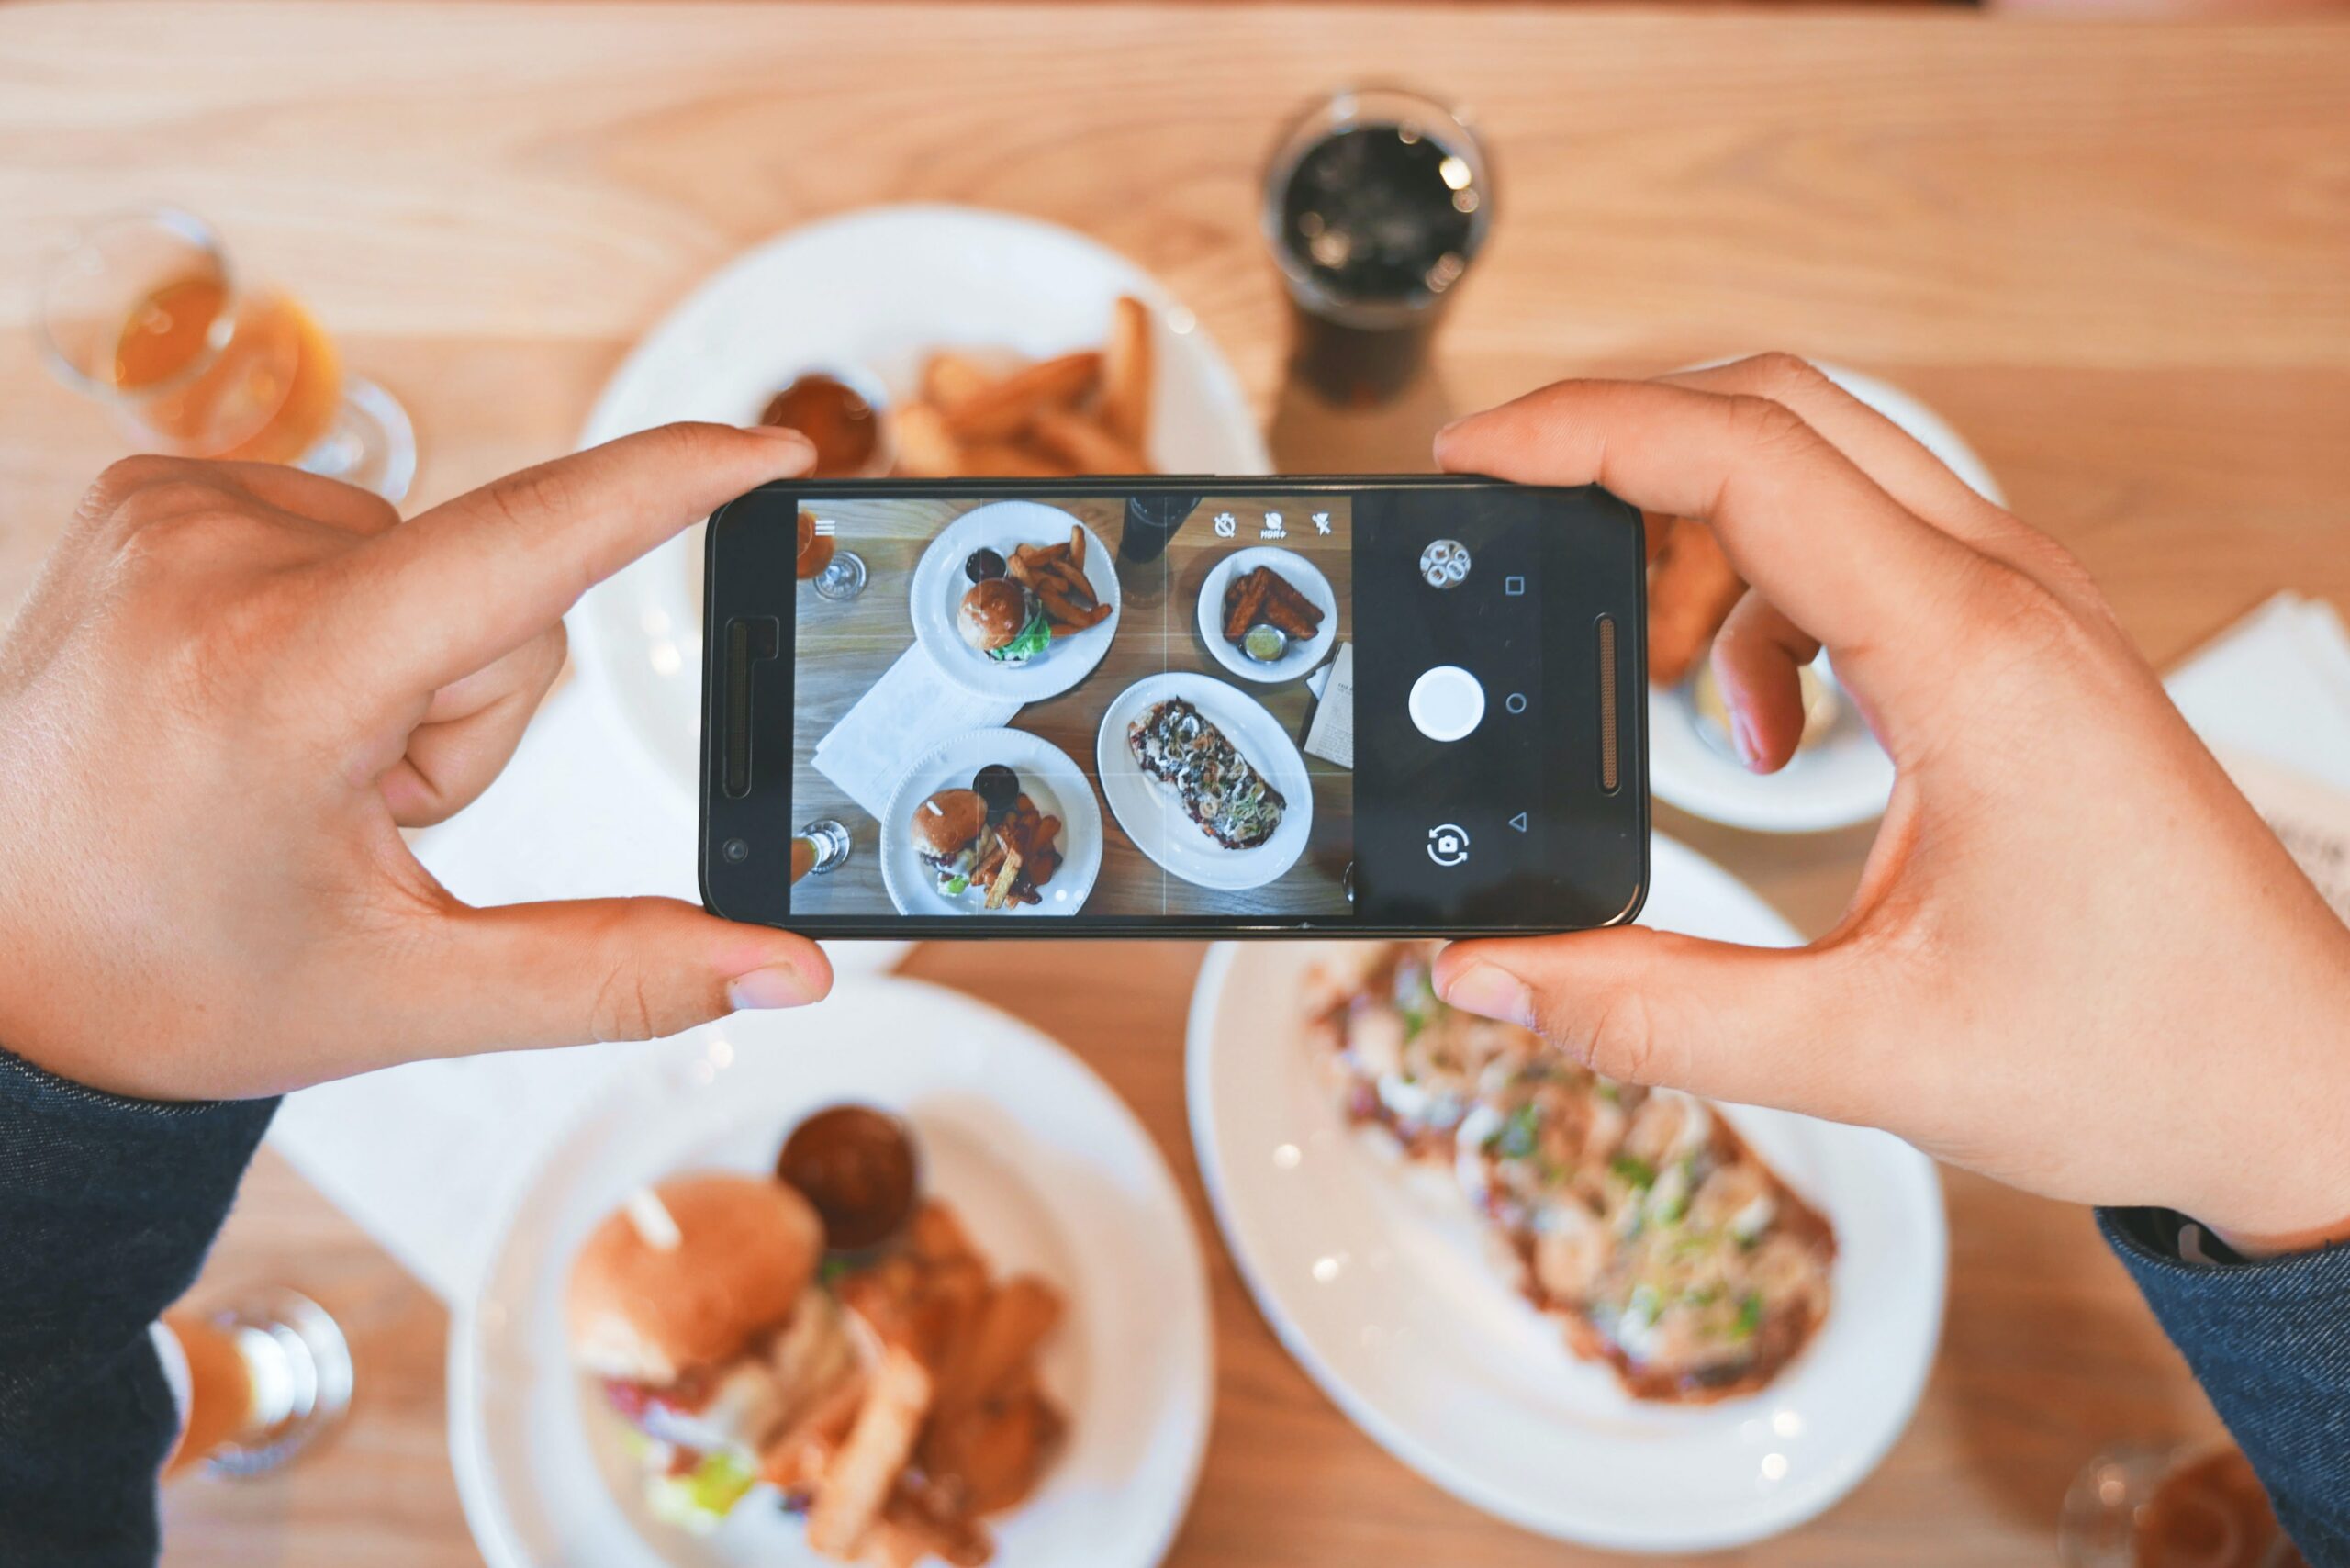 Comment augmenter la visibilité d’un restaurant sur internet ?